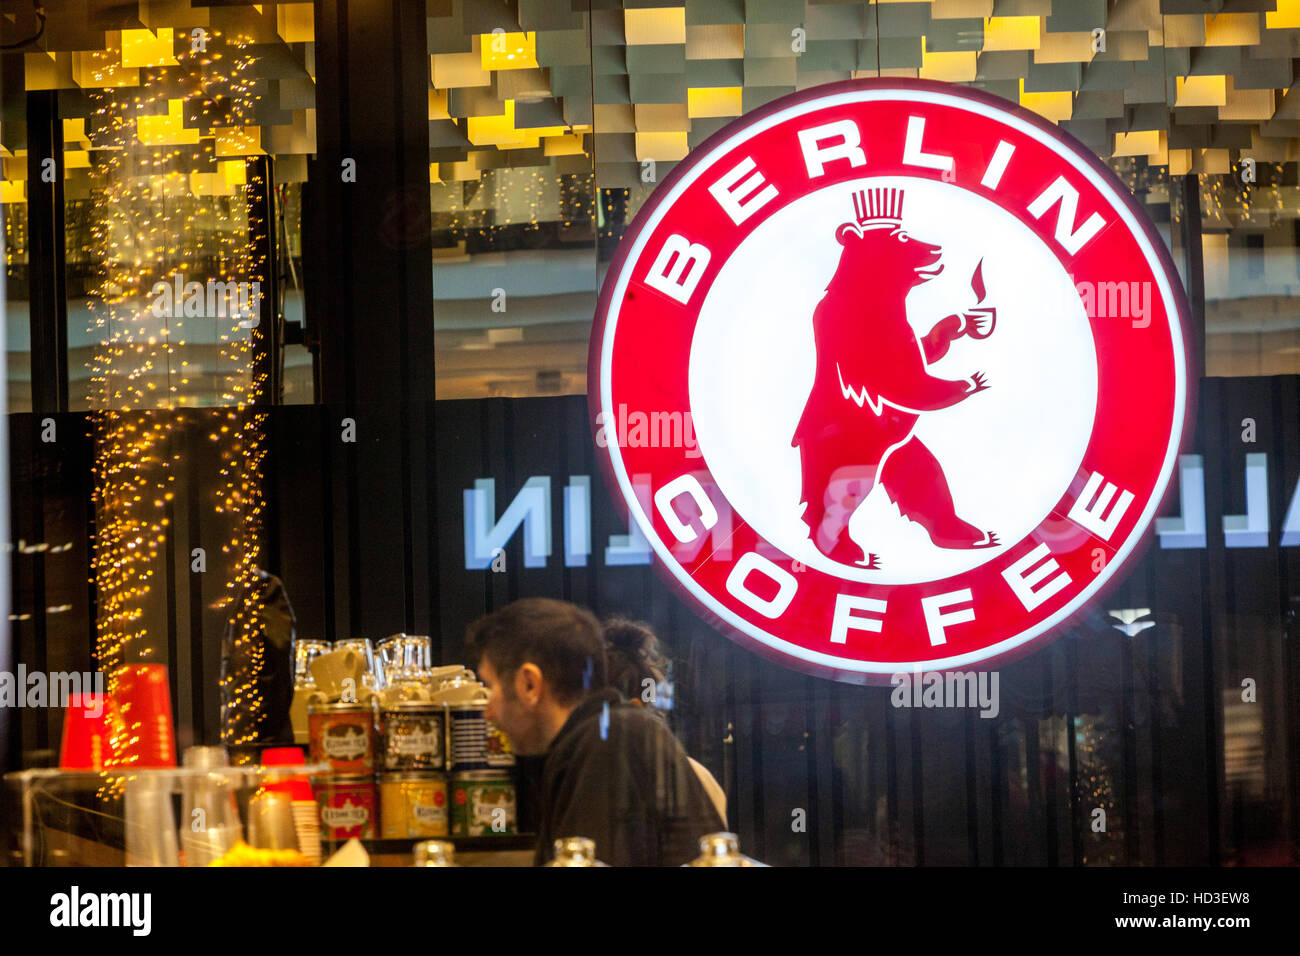 Berlin Kaffee, Cafe im Einkaufszentrum Berlin, Leipziger Platz, Berlin, Deutschland Stockfoto